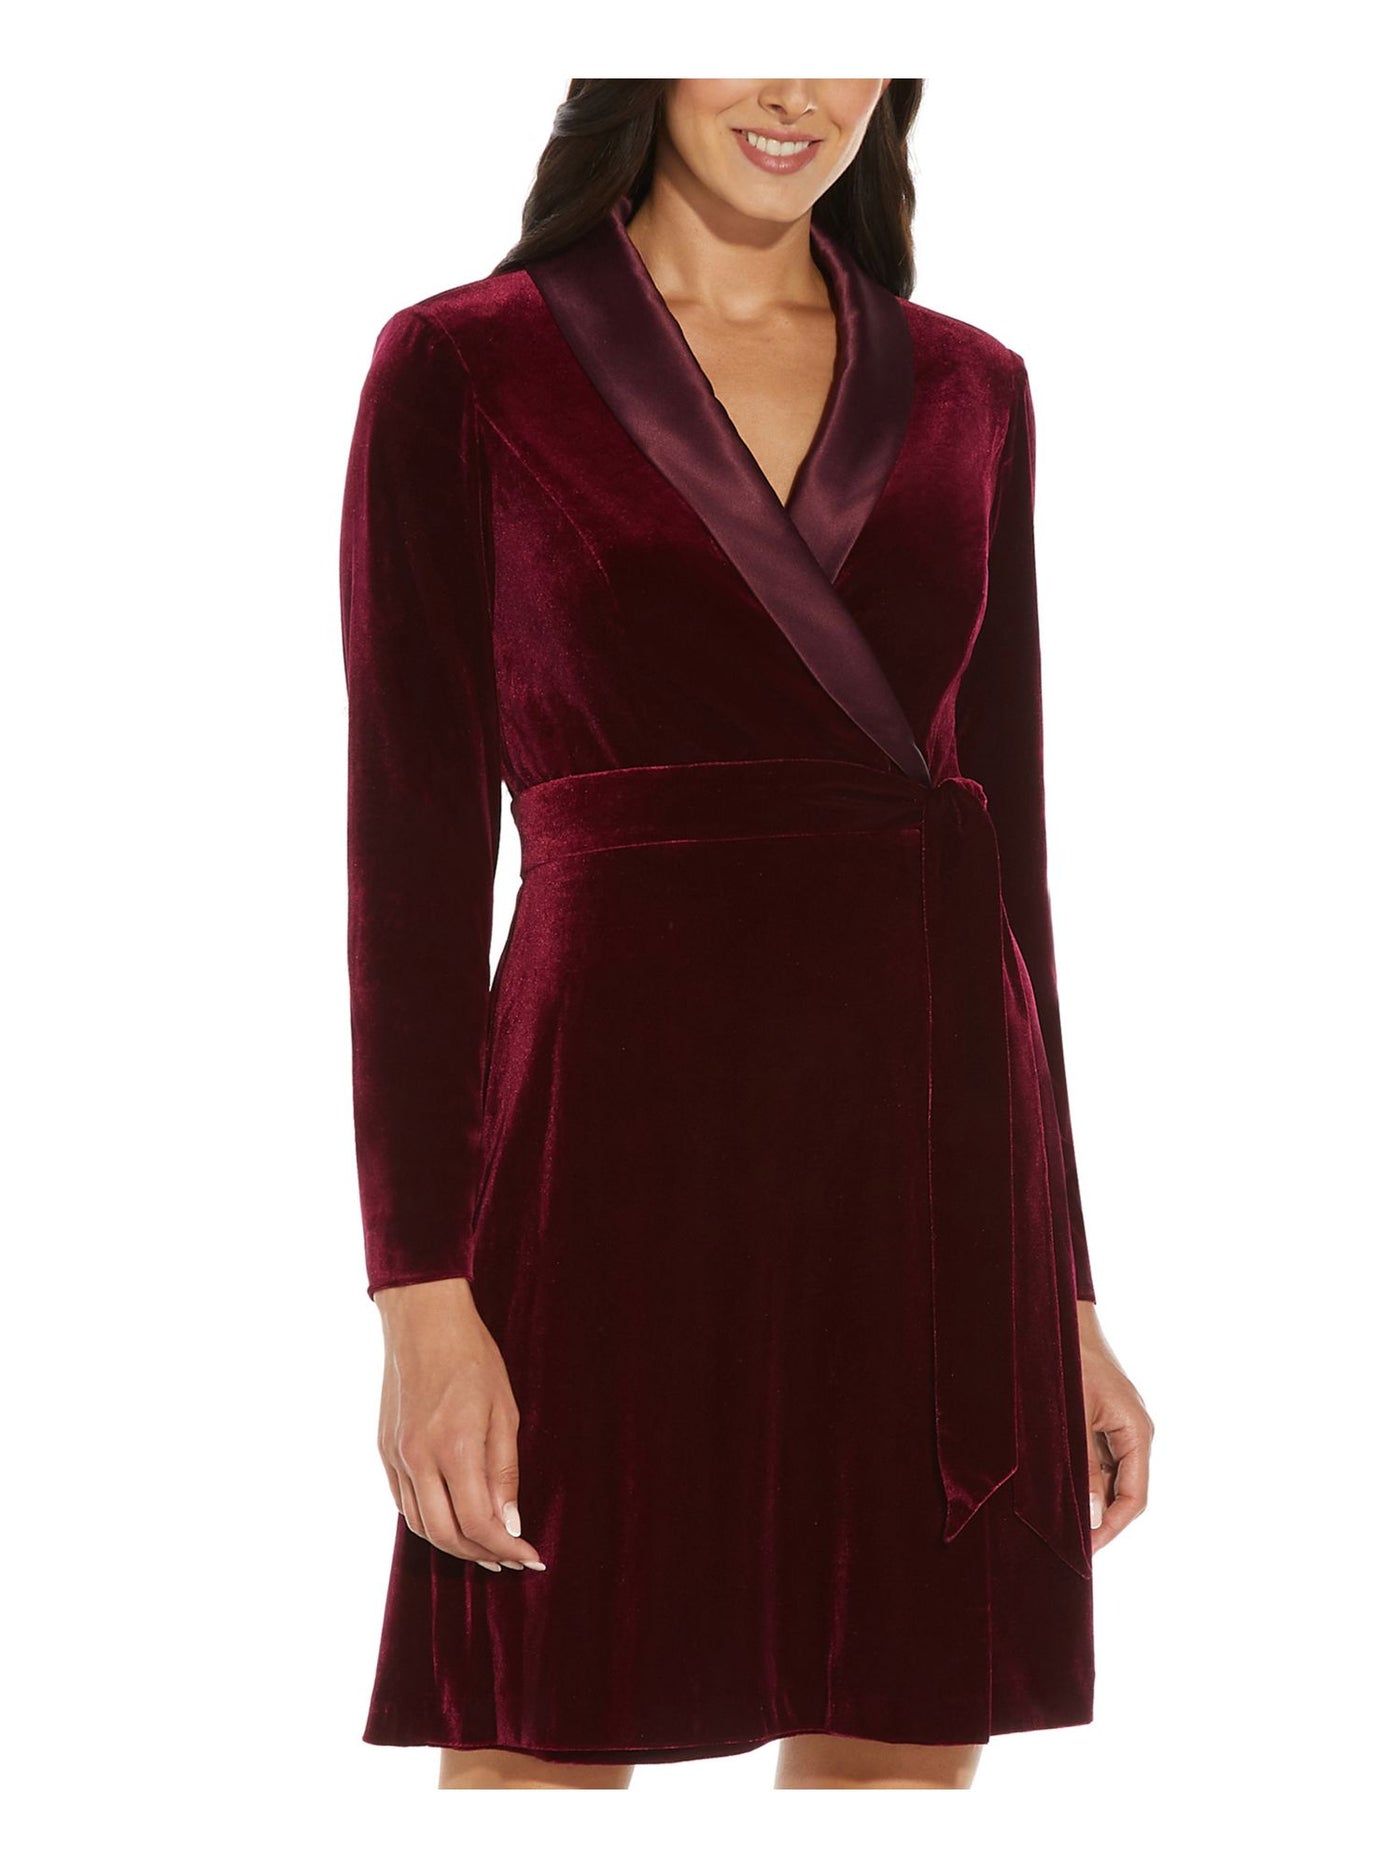 ADRIANNA PAPELL Womens Burgundy Tie Velvet Tuxedo Satin Collar Long Sleeve V Neck Knee Length Evening Faux Wrap Dress 4